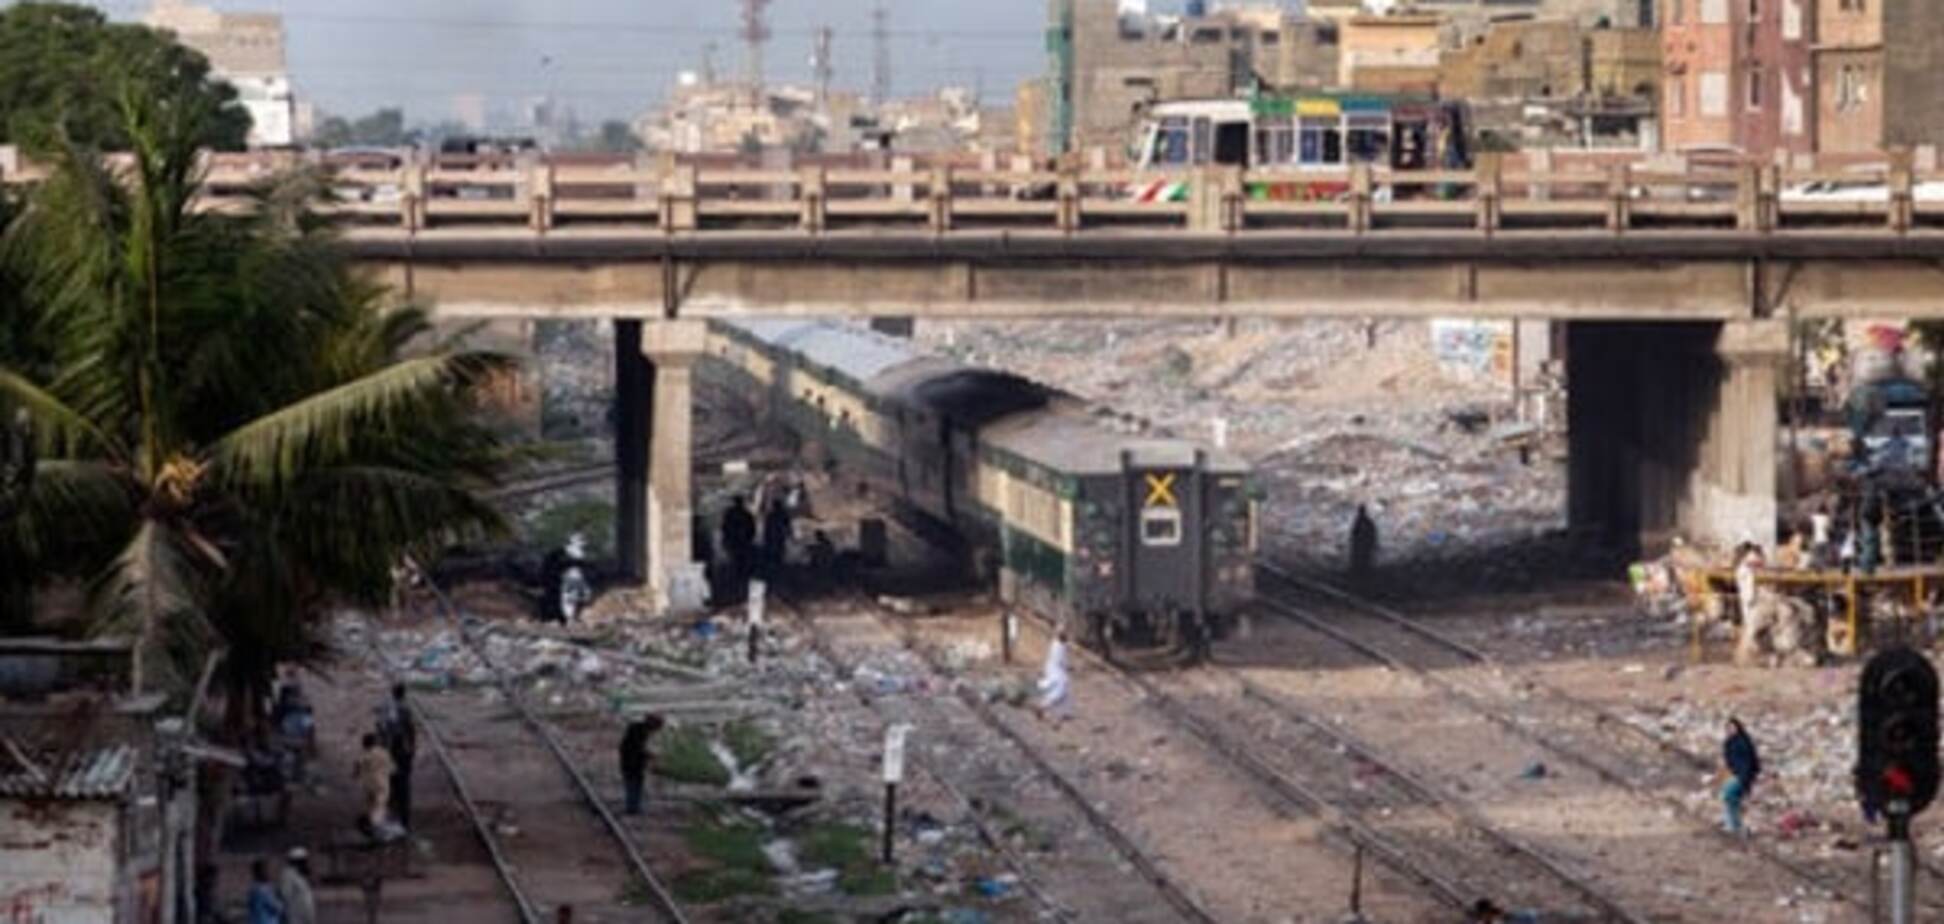 В Пакистане столкнулись два поезда: 6 человек погибли, 150 пострадали. Опубликованы фото и видео